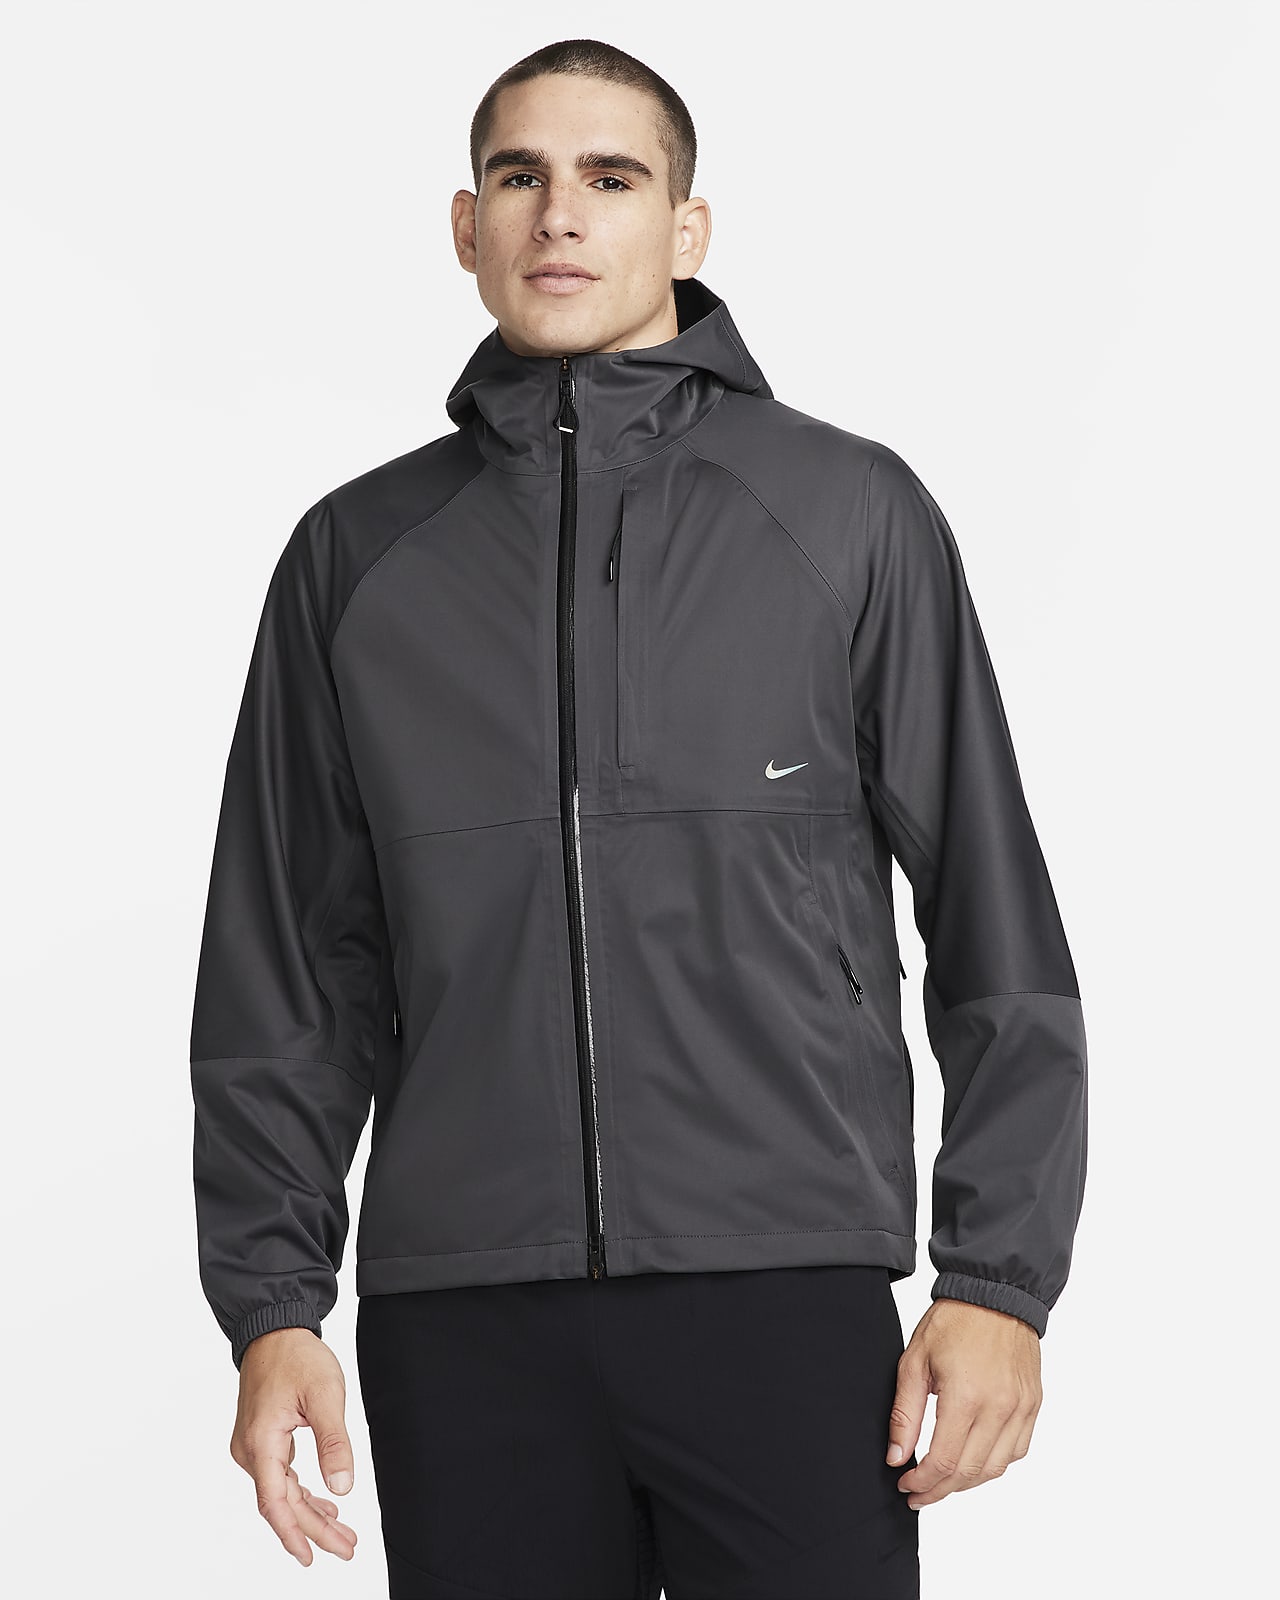 Nike Storm-FIT ADV APS Men's Versatile Jacket